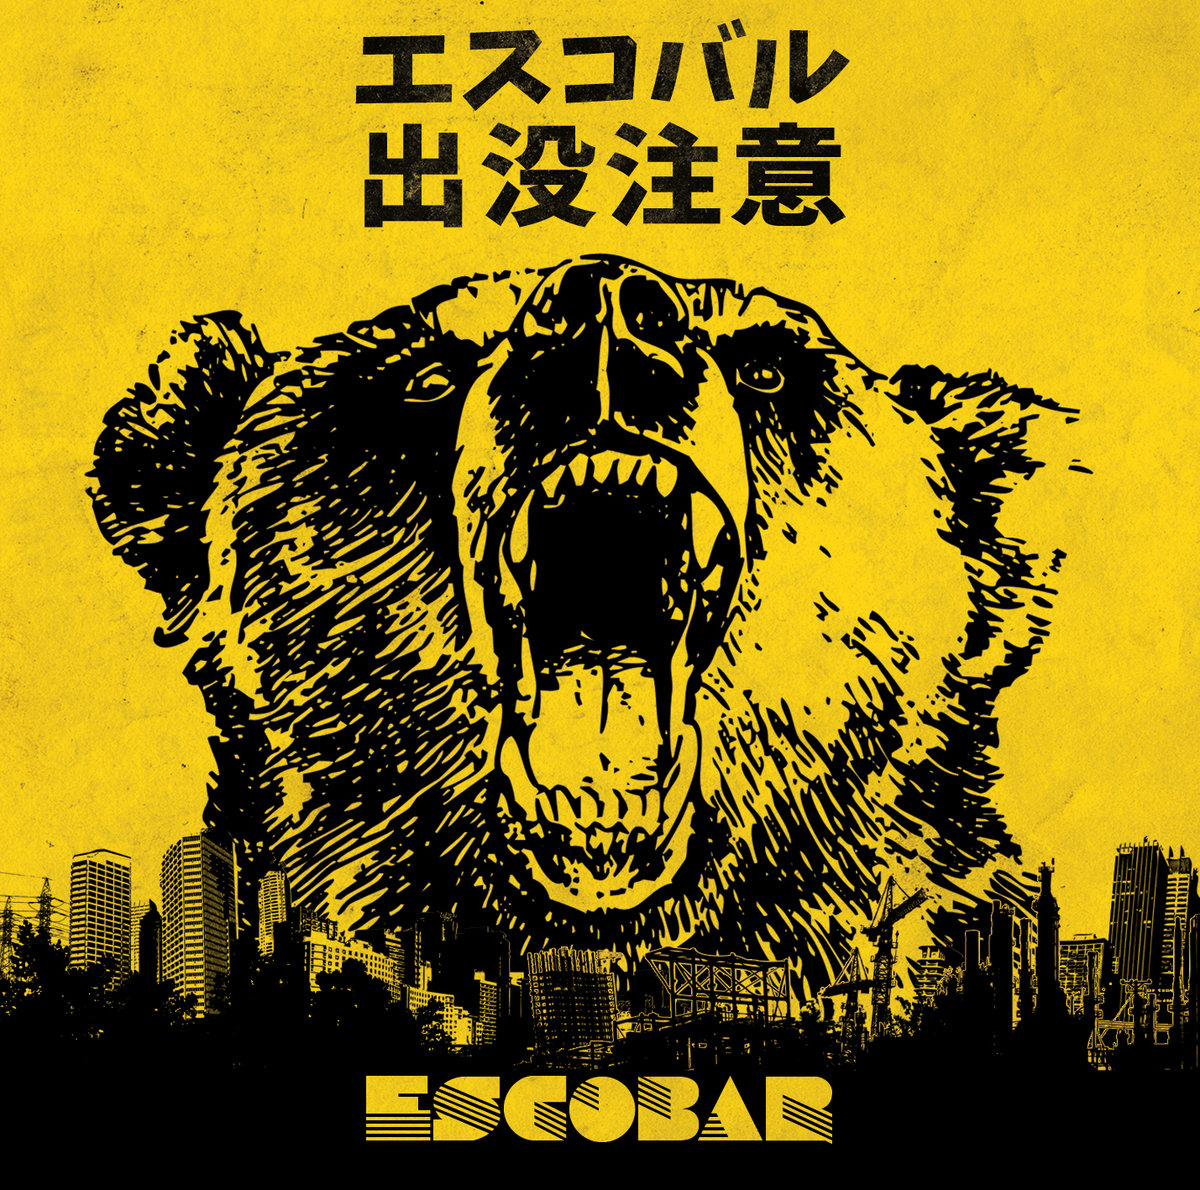 Escobar - s/t - CD